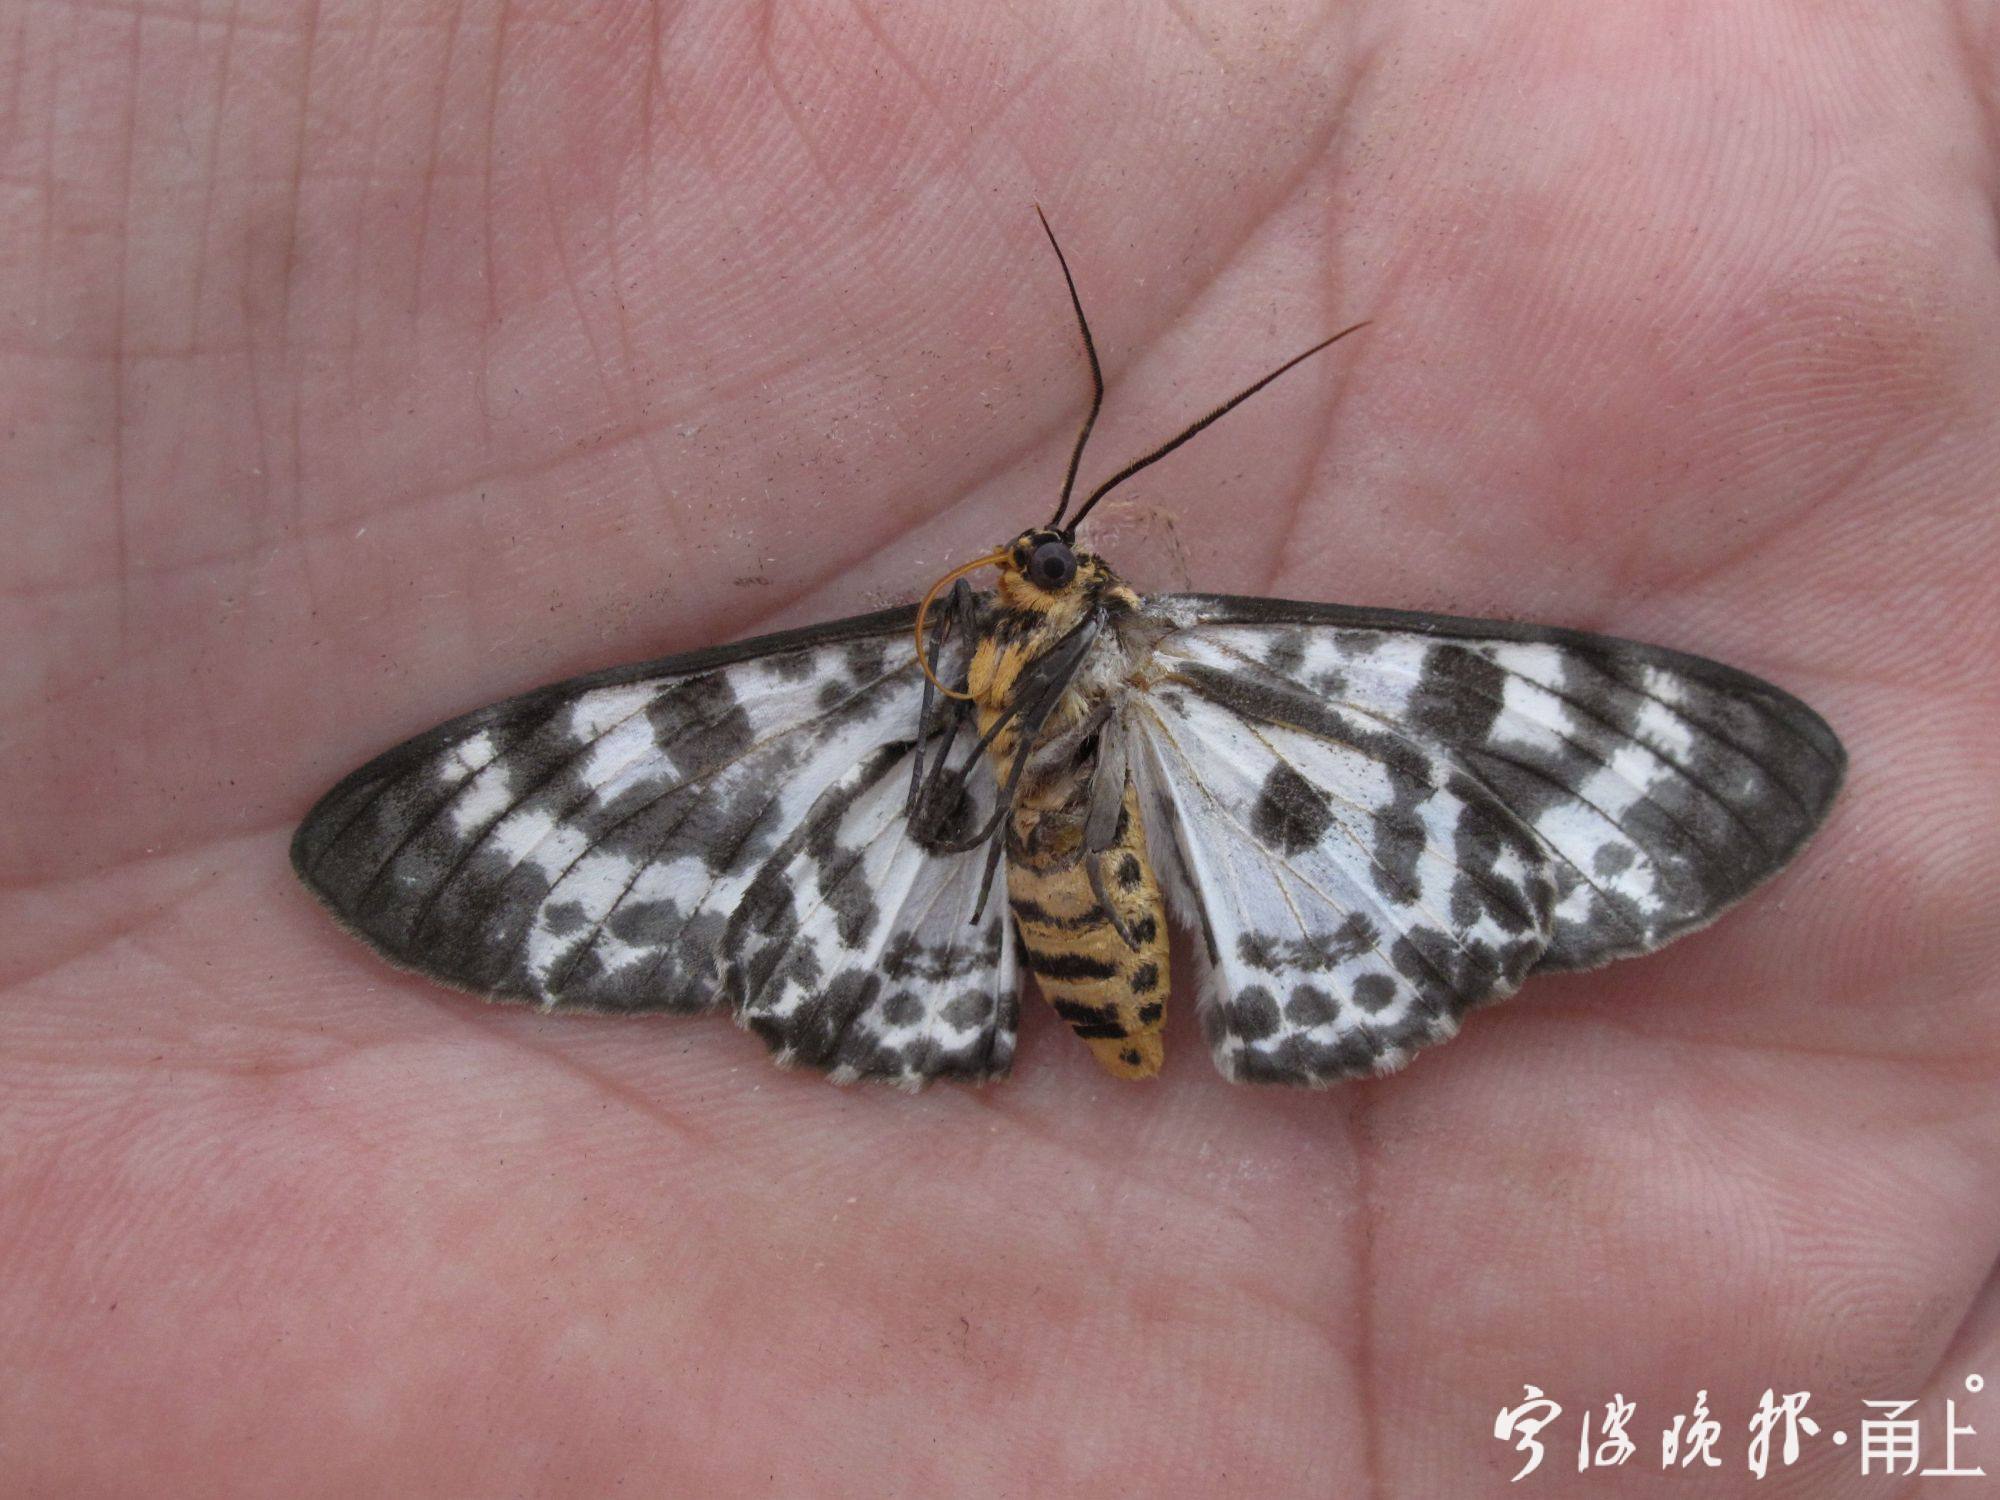 古怪的幼虫和可爱的成虫对应起来了,成虫翅膀的图案不亚于一般的蝴蝶